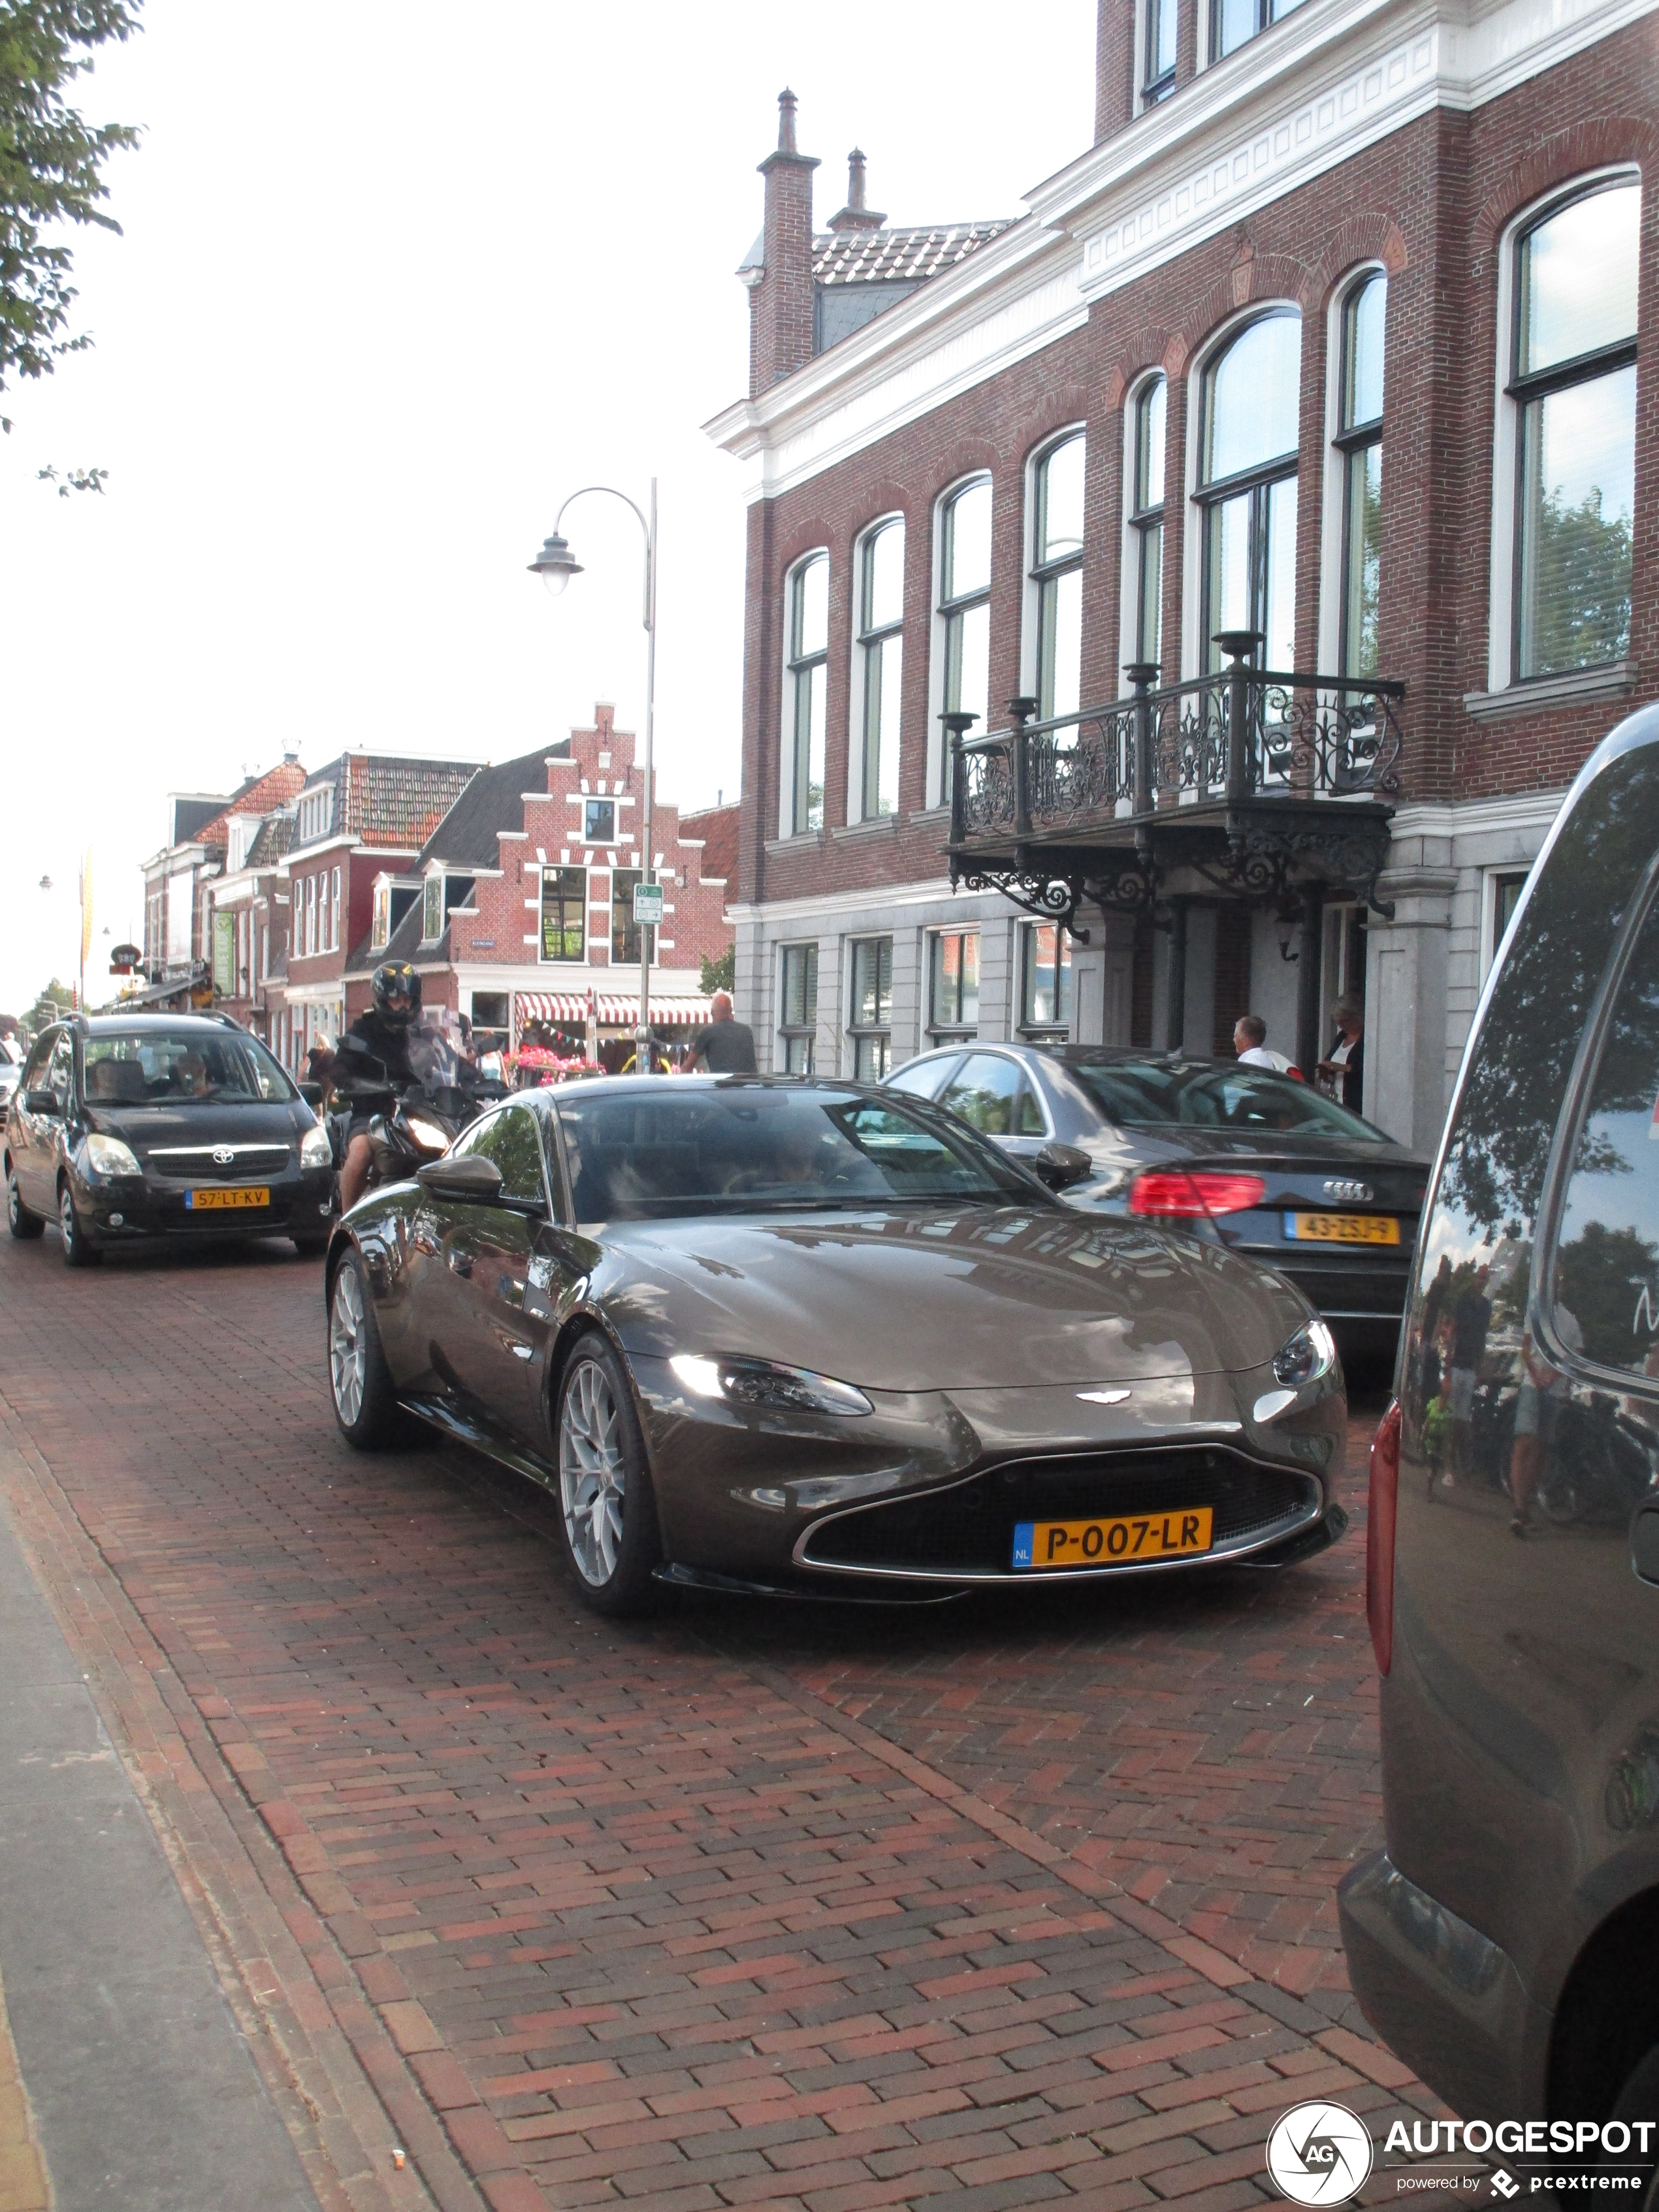 Nederlandse Aston Martin V8 Vantage 007 edition heeft toch een persoonlijk kenteken